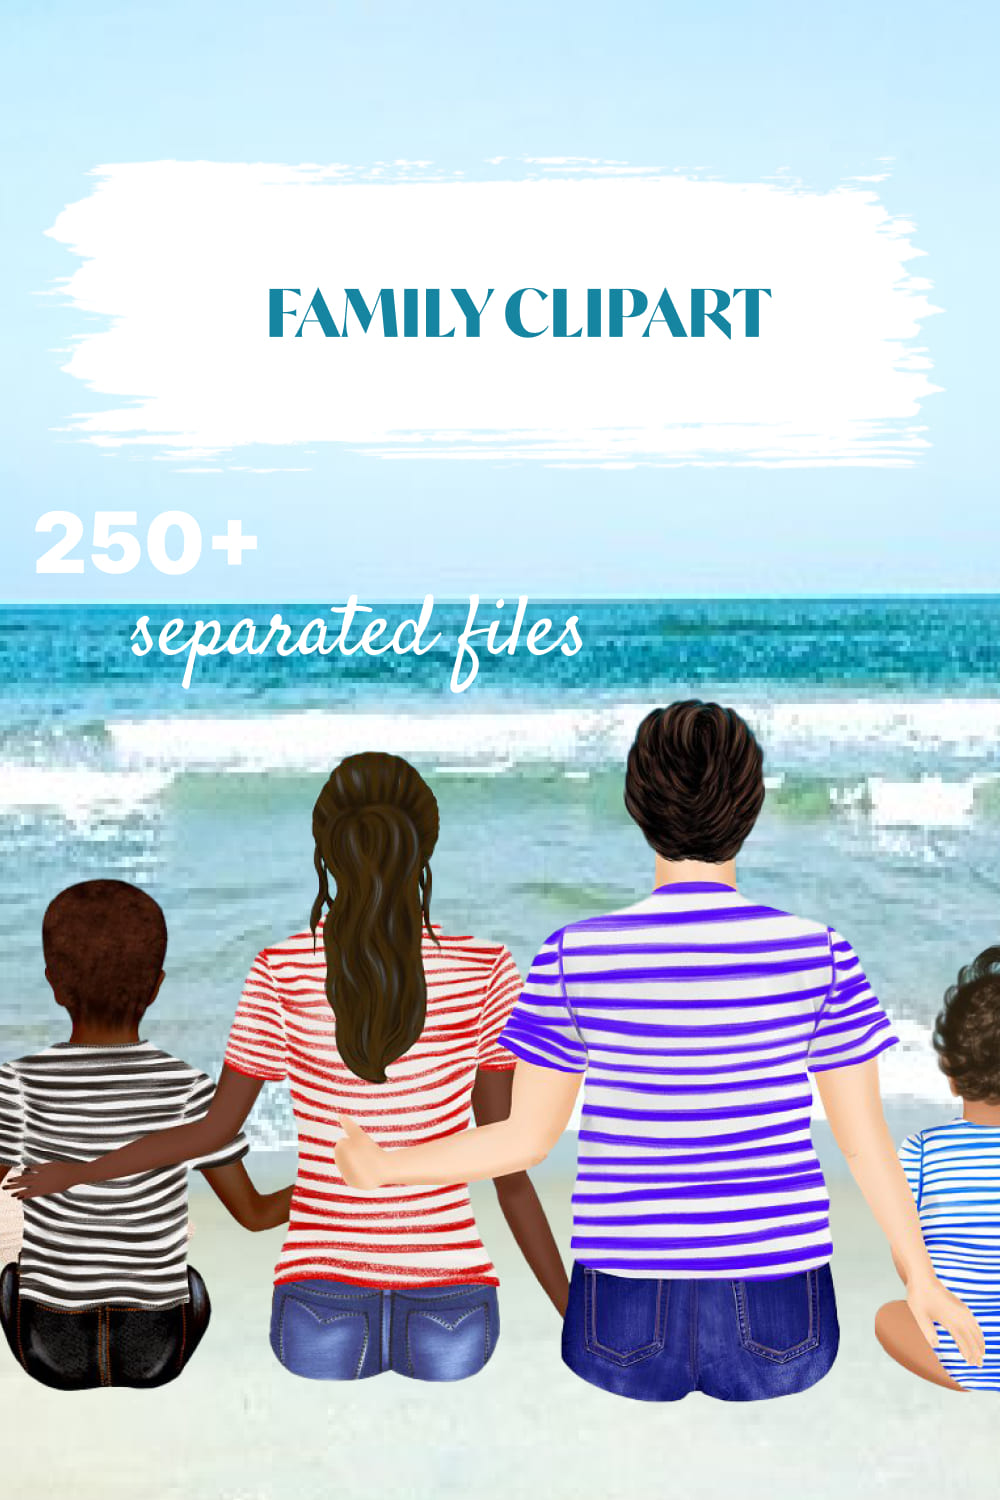 Family Clipart, Custom DIY Portrait - Pinterest.